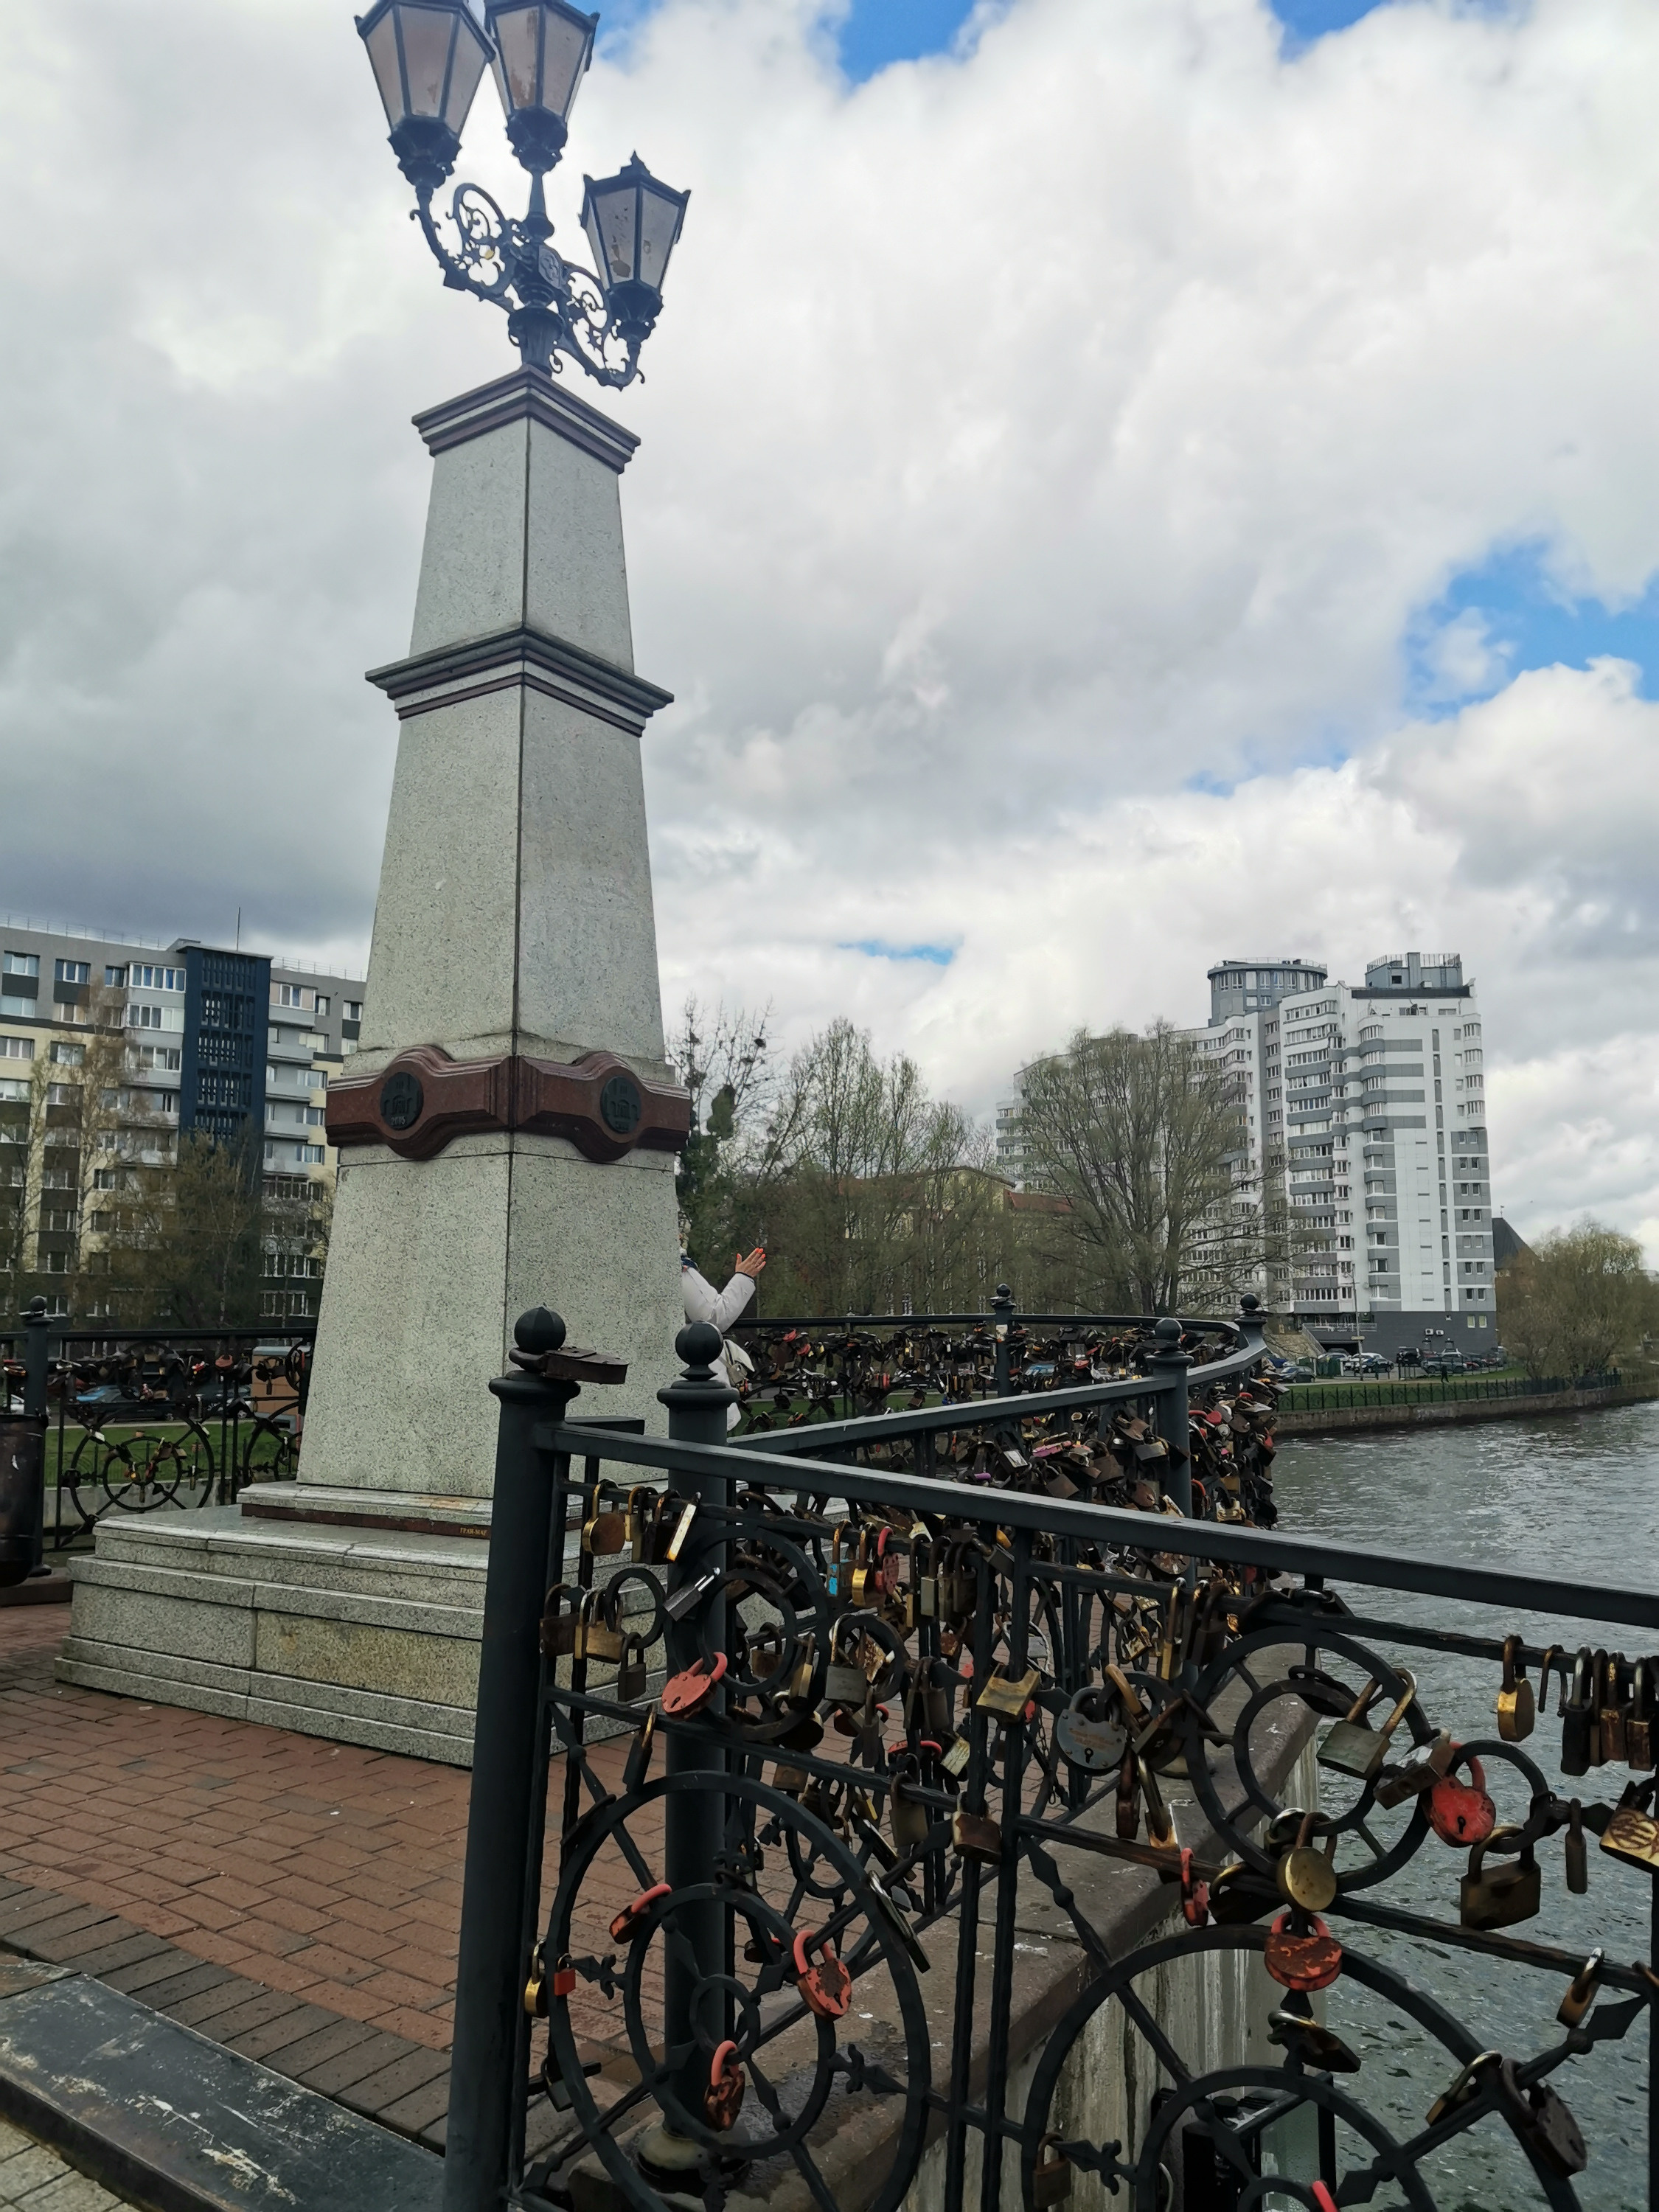 Ограждения мостов облюбовали для символических замочков и жители Калининграда